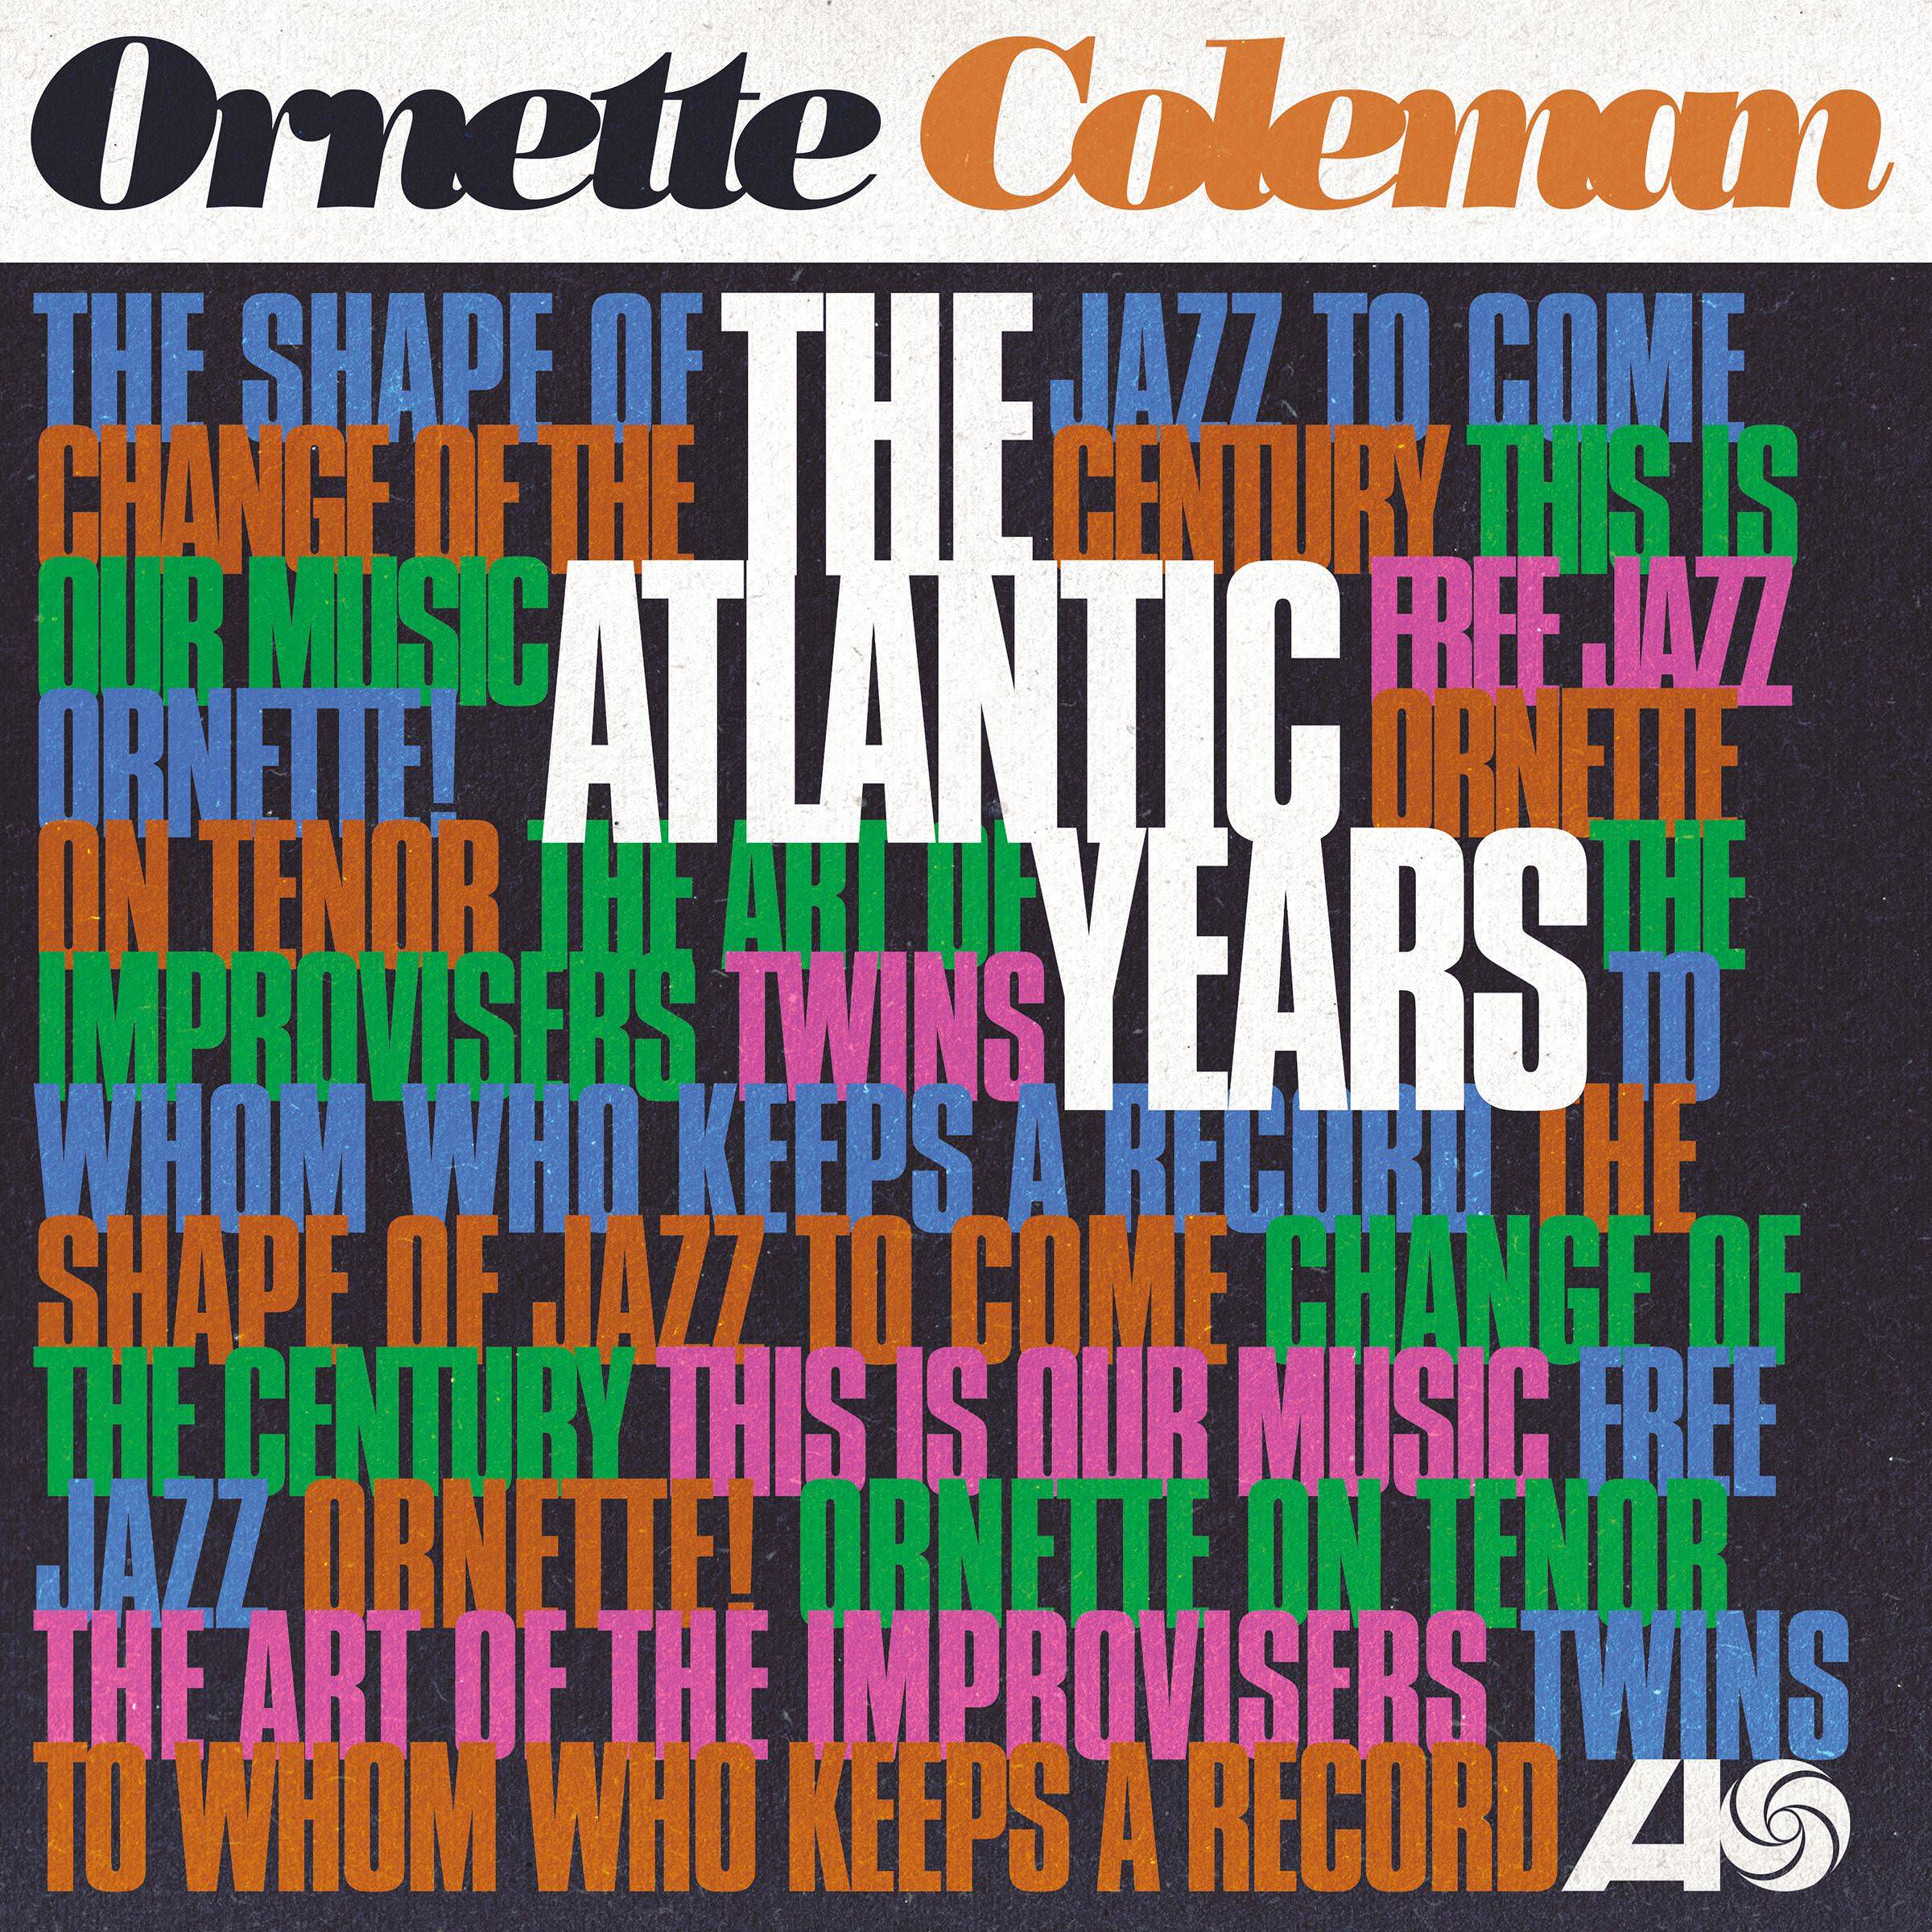 Ornette Coleman - The Atlantic Years (2018) [AcousticSounds FLAC 24bit/192kHz]